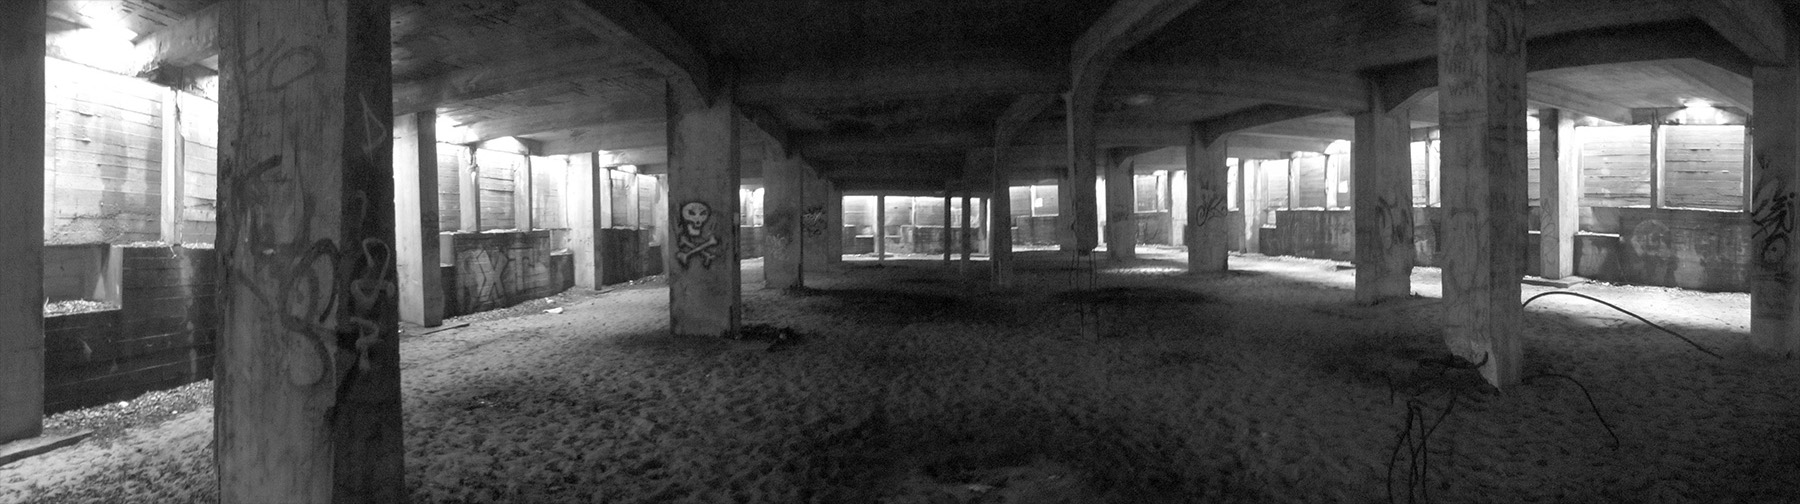 skoleprojekt skole projekt arkitekt arkitektskole aarhus ø rügen tyskland anden verdenskrig prora studerende kreativt værksted moderne dans berlins kunstakademi katedral kasino beton